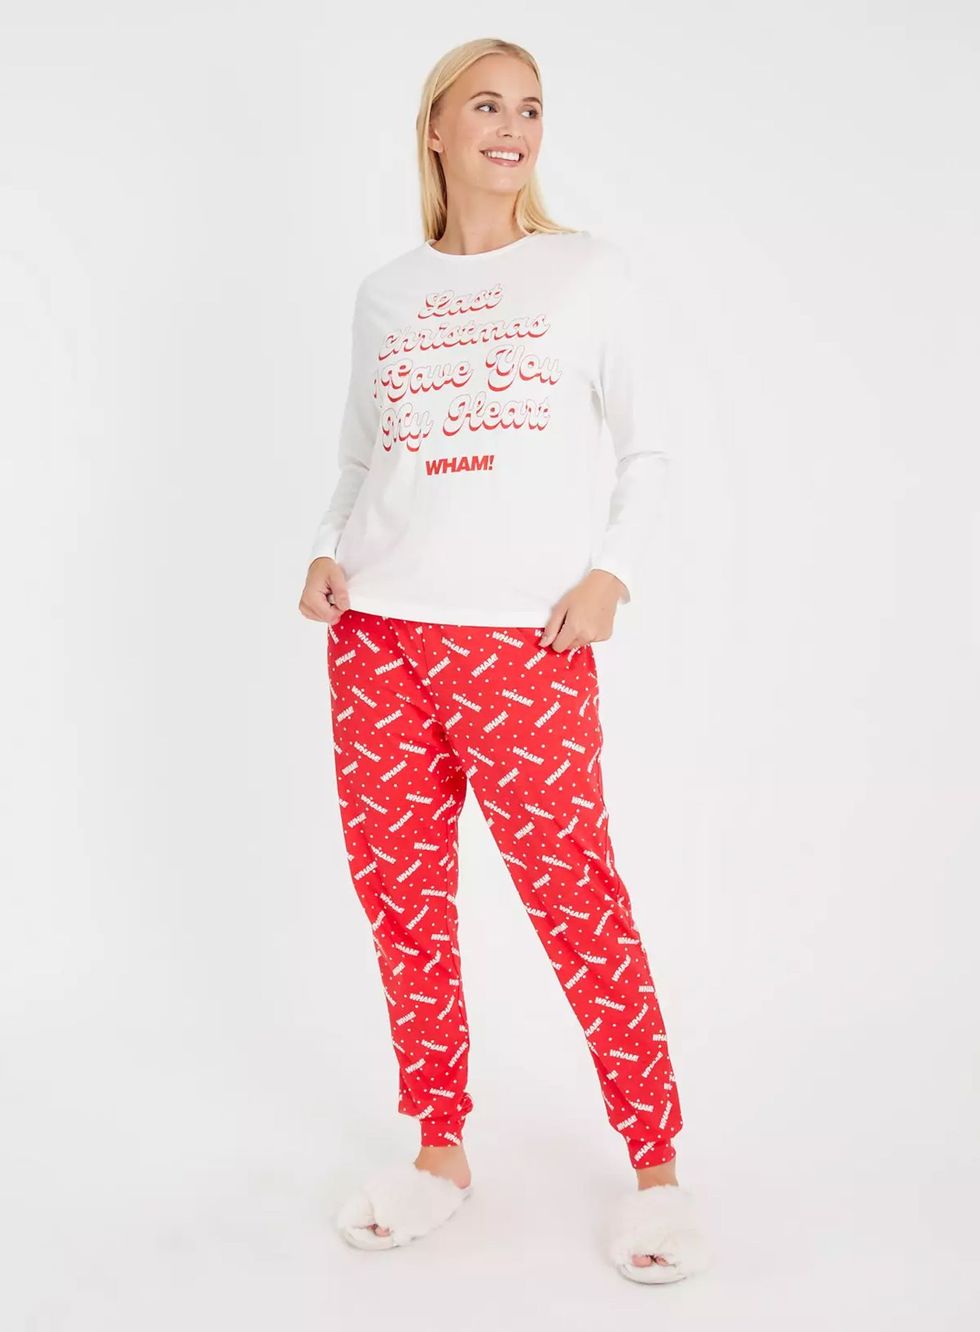 Women's Christmas pyjamas - Best women's pyjamas Christmas 2023